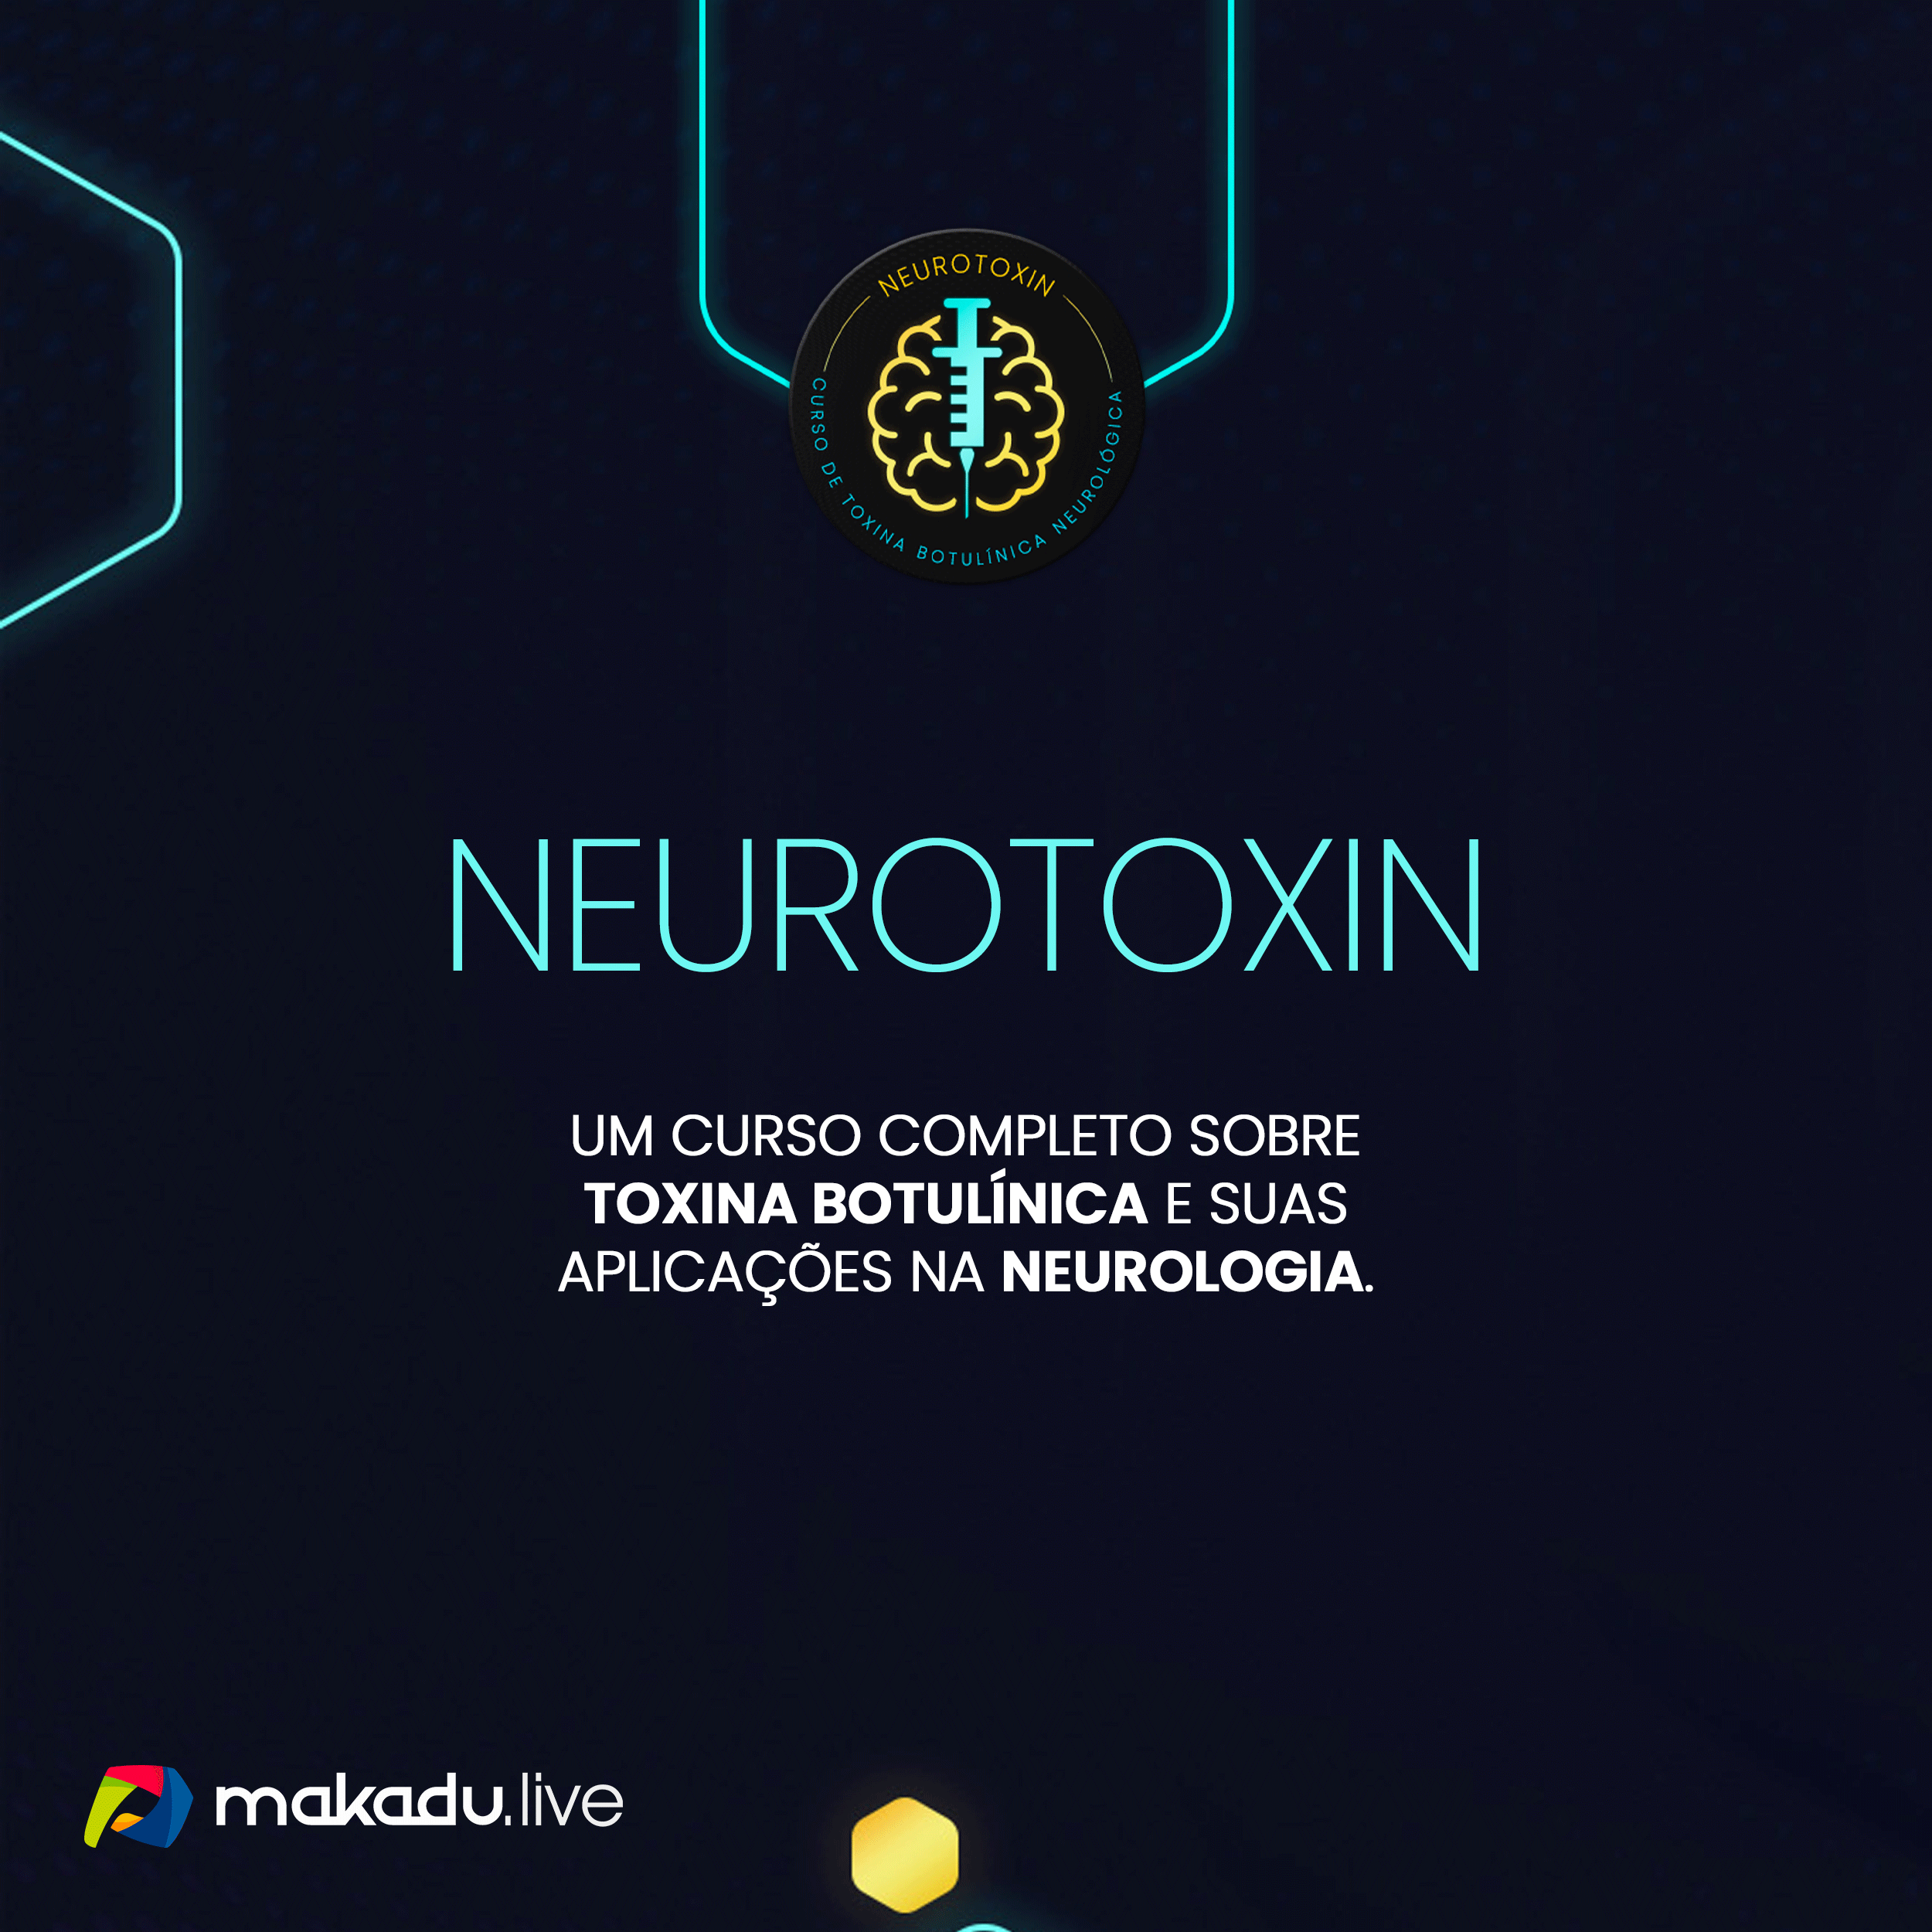 Neurotoxin-Whats